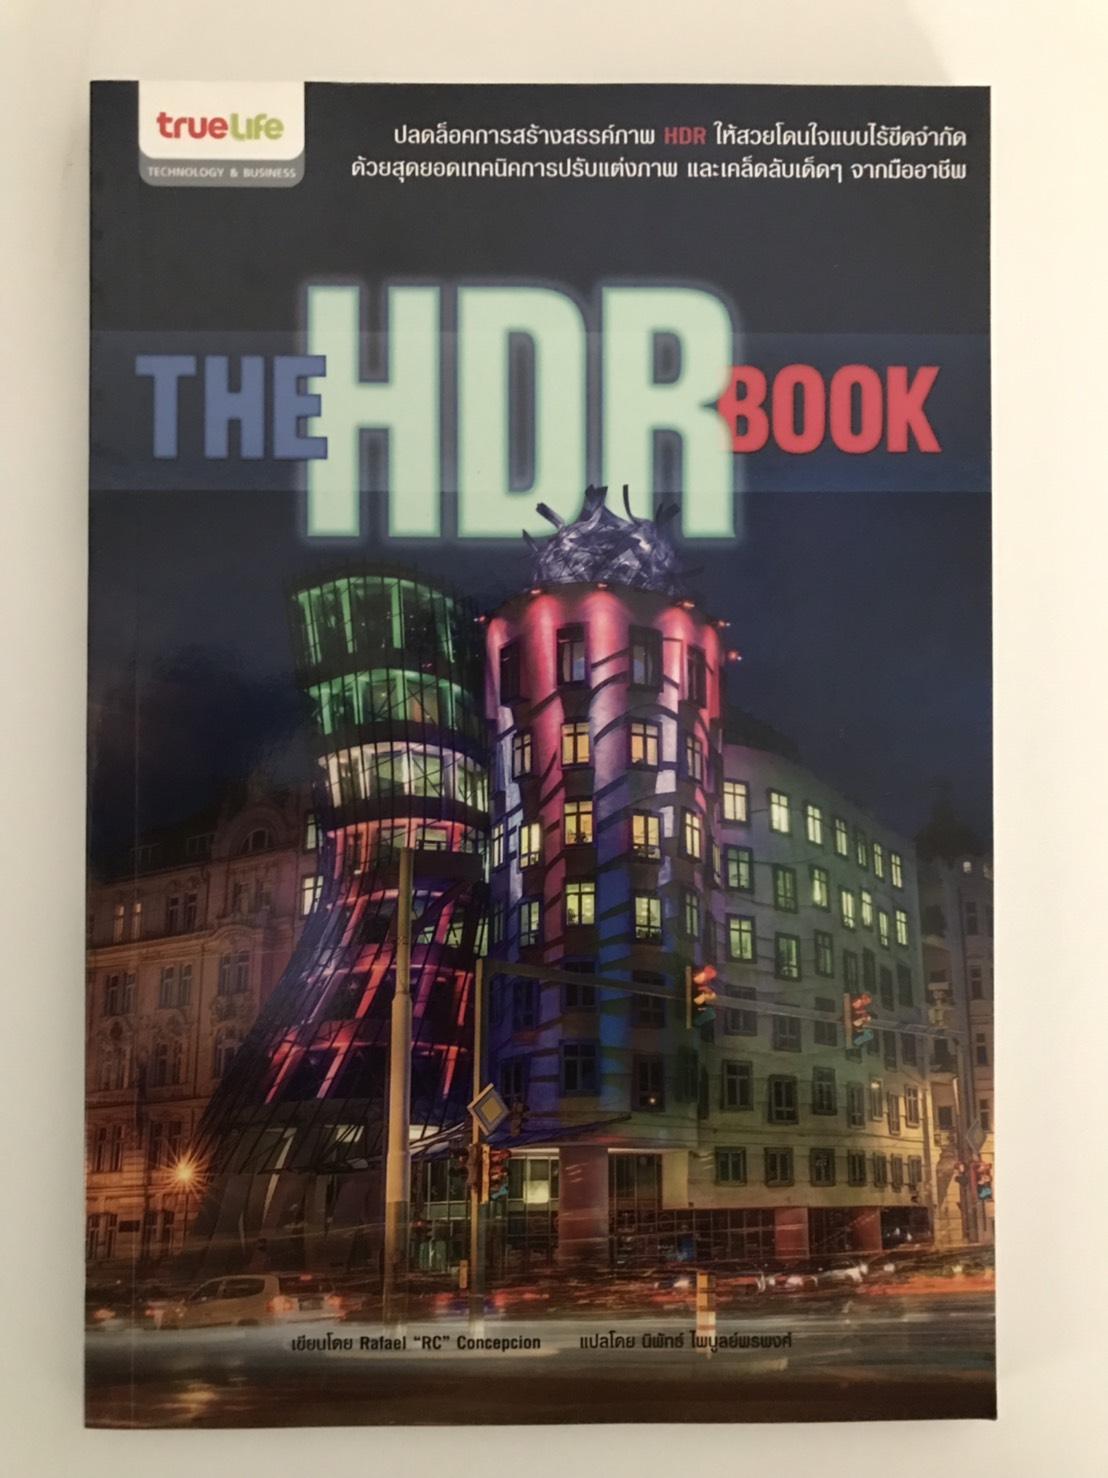 The HDR Book ปลดล็อคการสร้างสรรค์ภาพ HDR ให้สวยโดนใจแบบไร้ขีดจำกัด ด้วยสุดยอดเทคนิคการปรับแต่งภาพ เทคนิคการถ่ายภาพชั้นยอดเพื่อสร้างภาพ HDR ชั้นเยี่ยม และเคล็ดลับเด็ดๆ จากมืออาชีพ